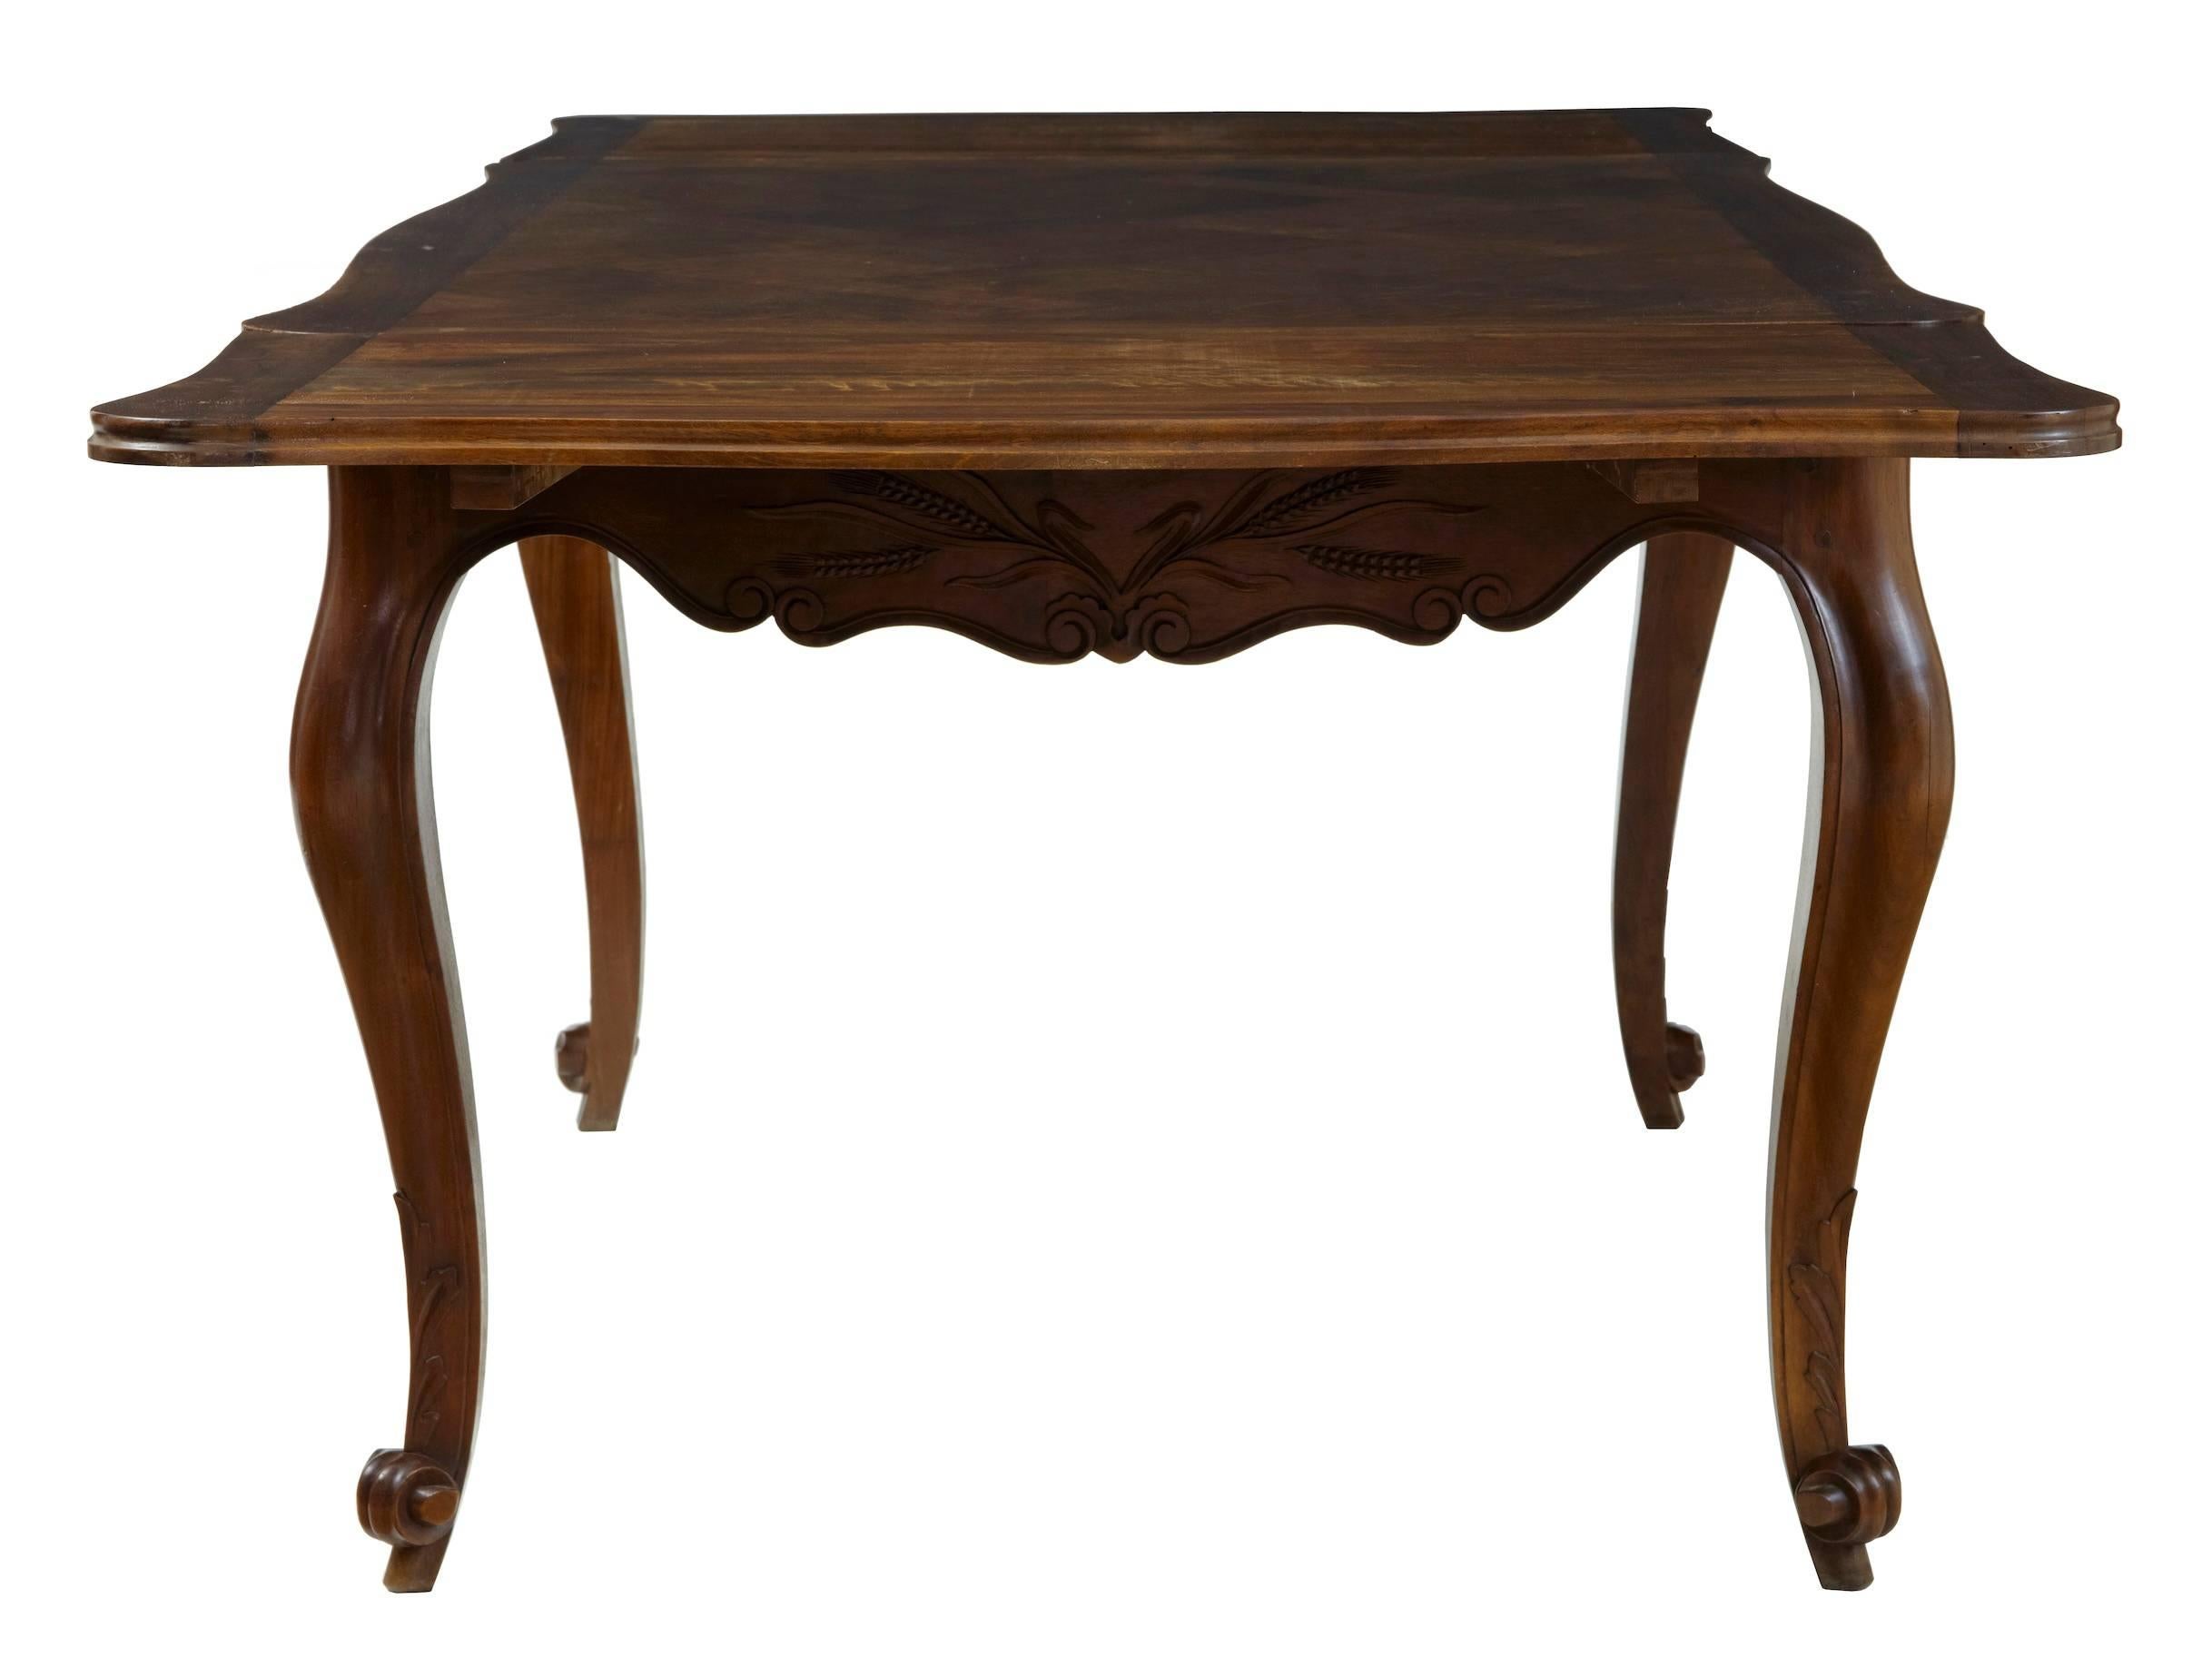 Woodwork 19th Century French Walnut Parquet Farmhouse Drawleaf Table